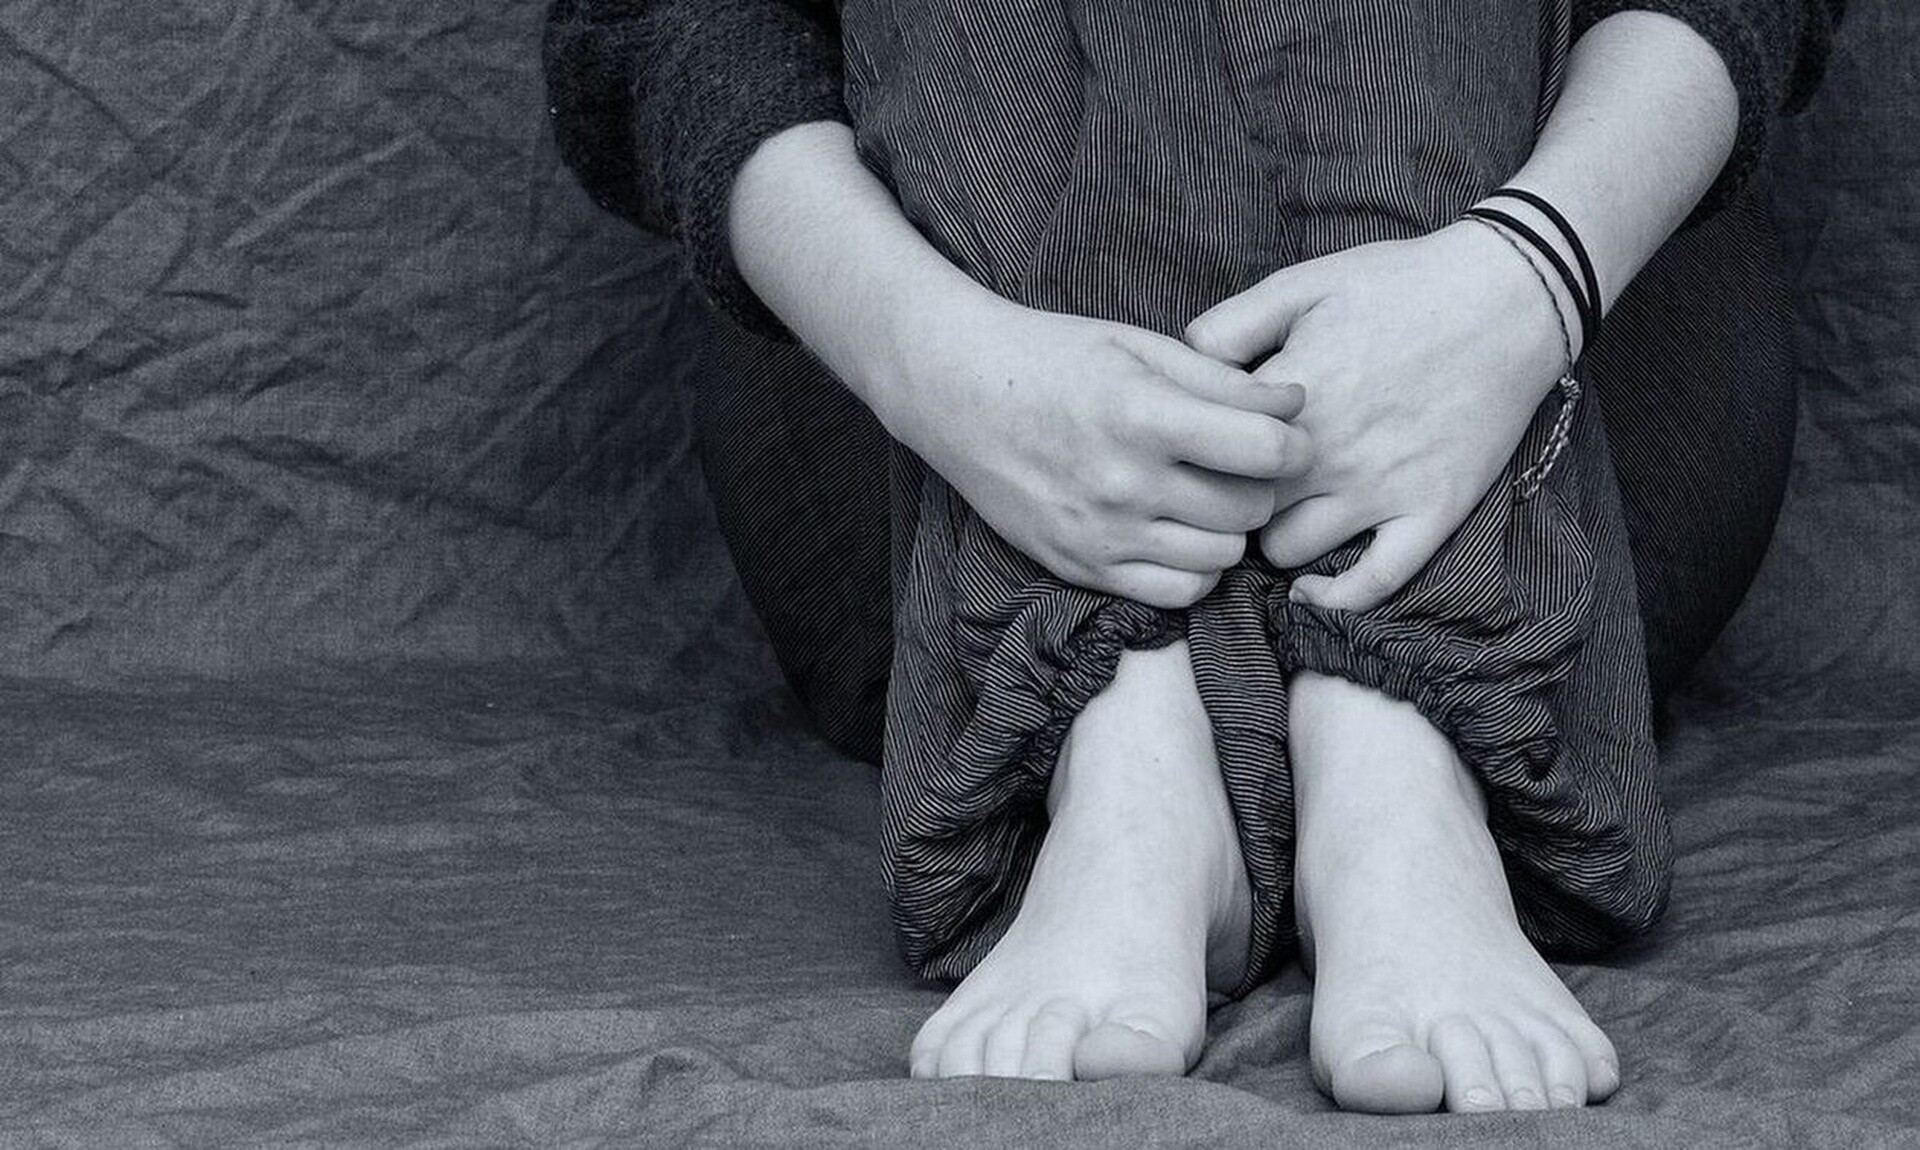 Φρίκη στην Χαλκίδα: 7χρονος εξομολογήθηκε στους γονείς του πως τον βίασε 11χρονος φίλος του